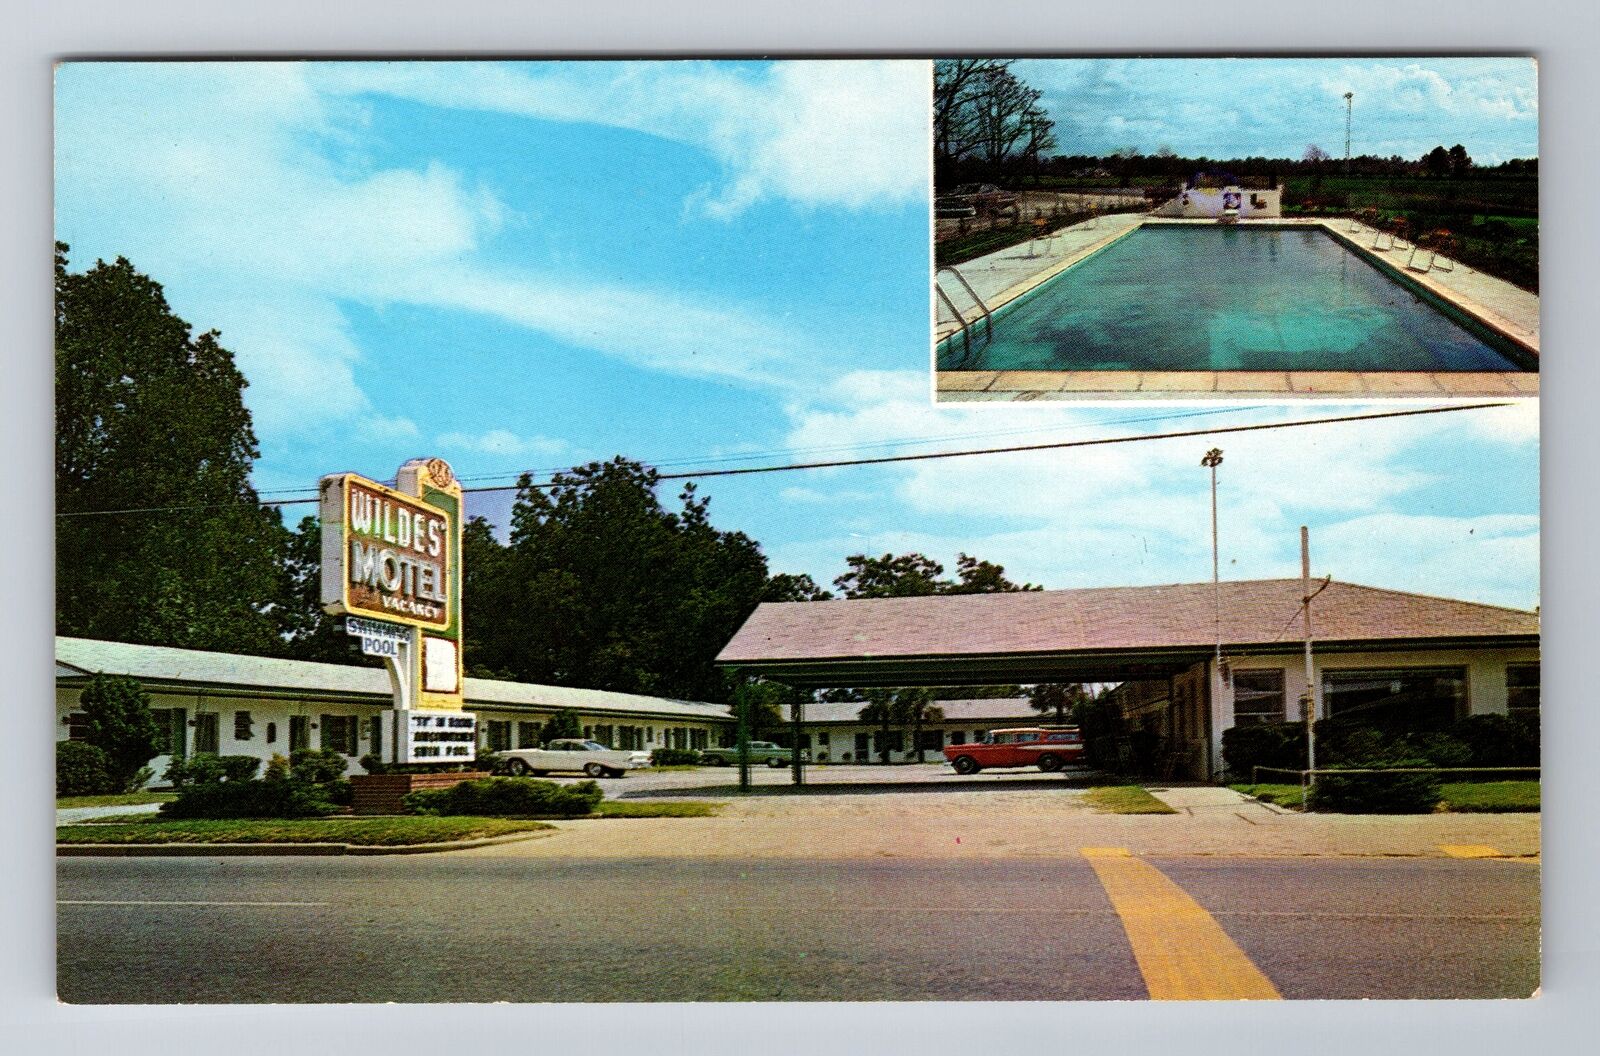 Statesboro GA-Georgia, Wildes Motel Advertising, Antique, Vintage Postcard